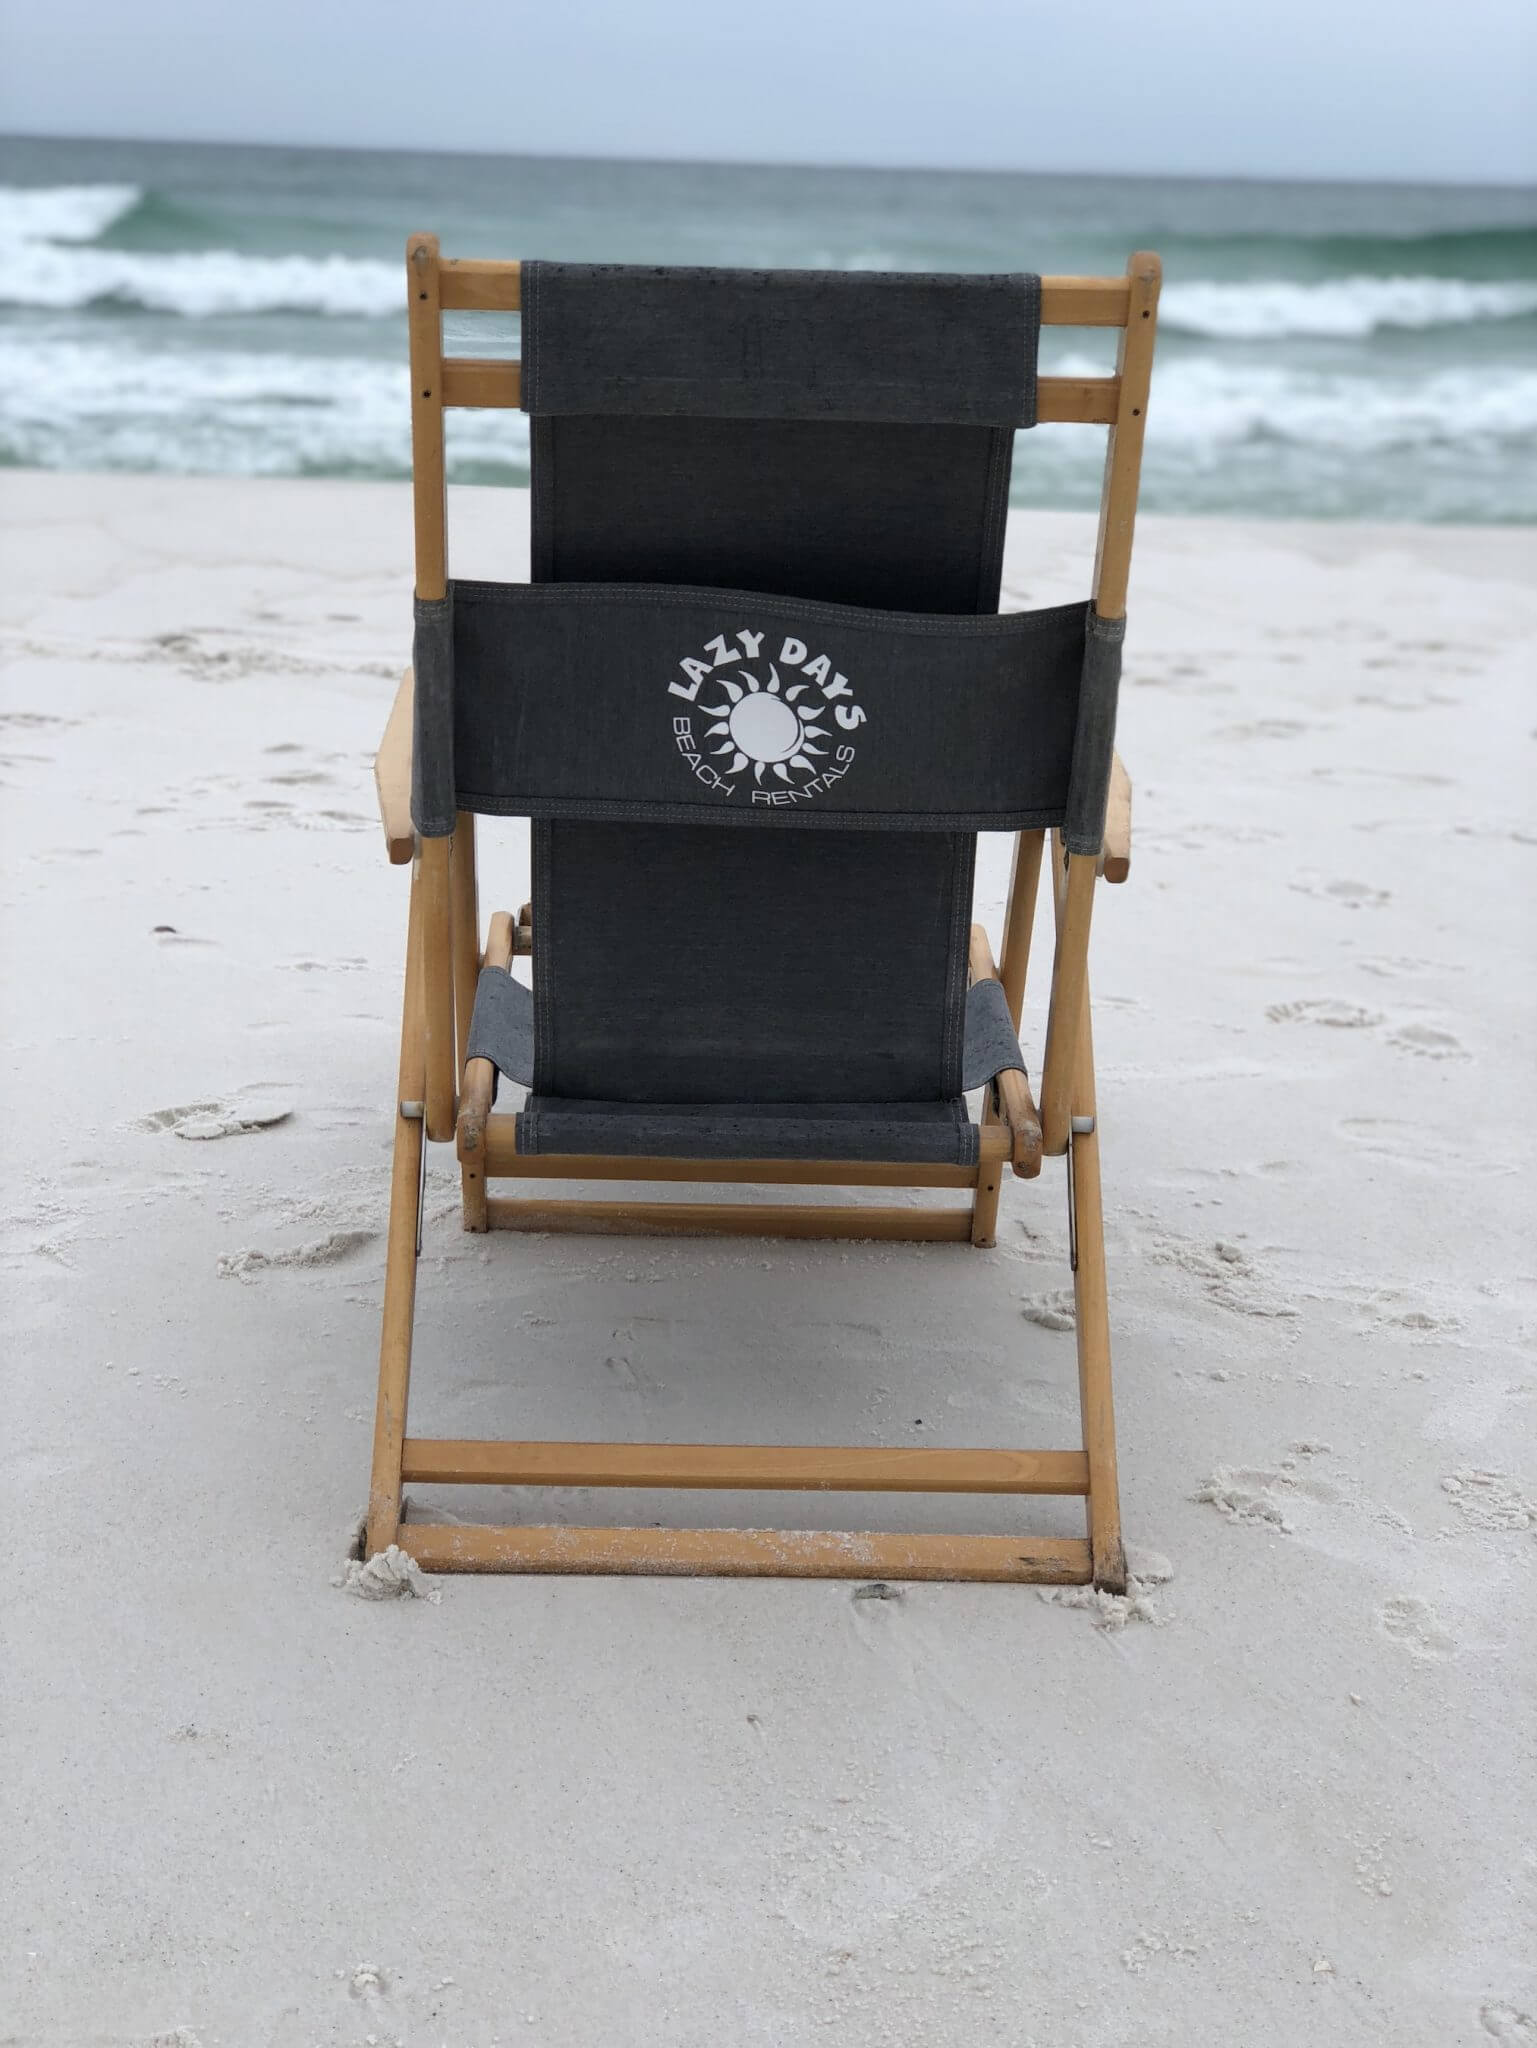 Additional Beach Chair - Lazy Days Beach Service